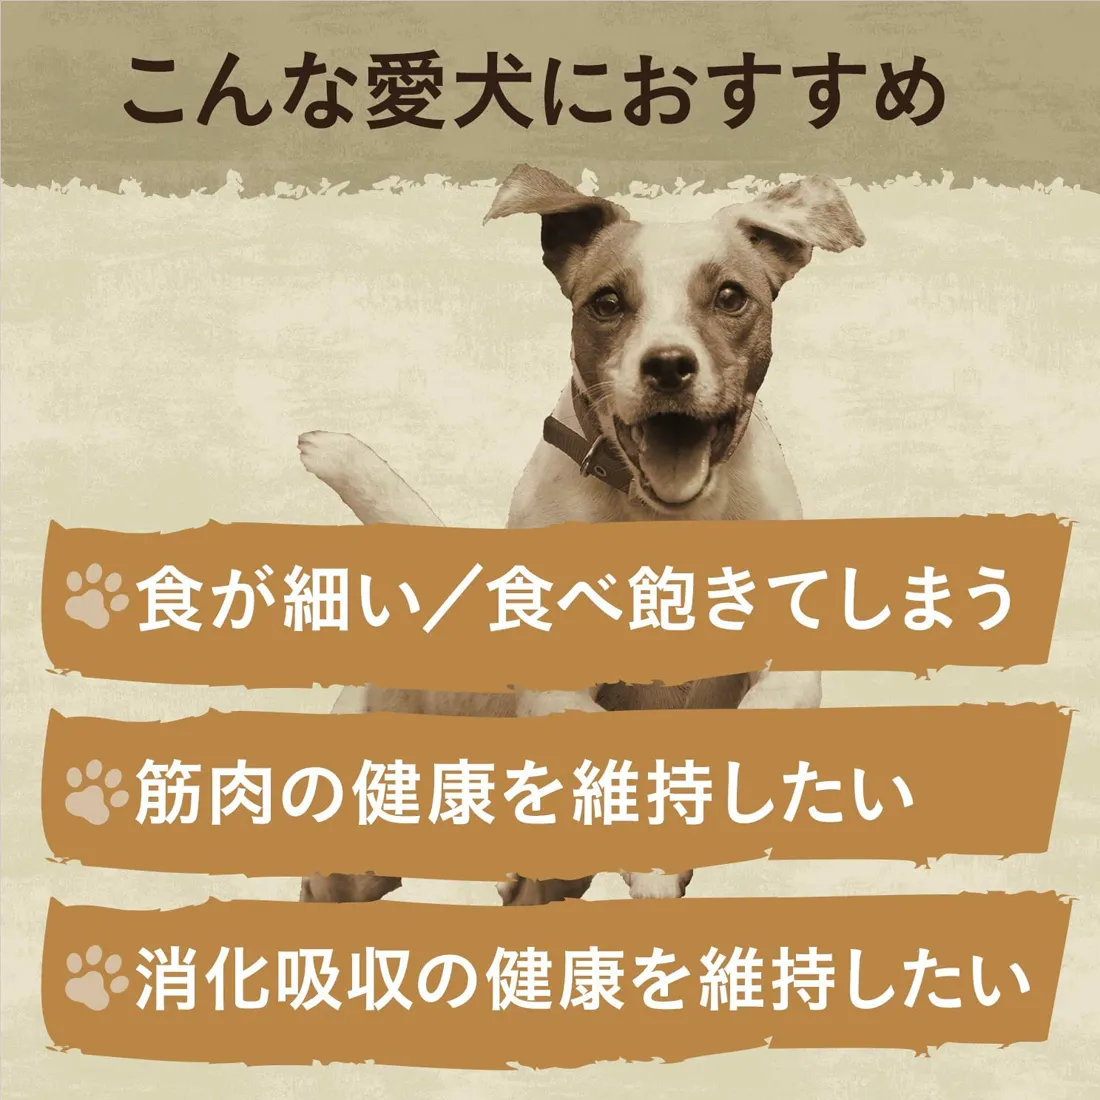 ワイルドレシピ 超小型犬～小型犬用 [成犬用] チキン